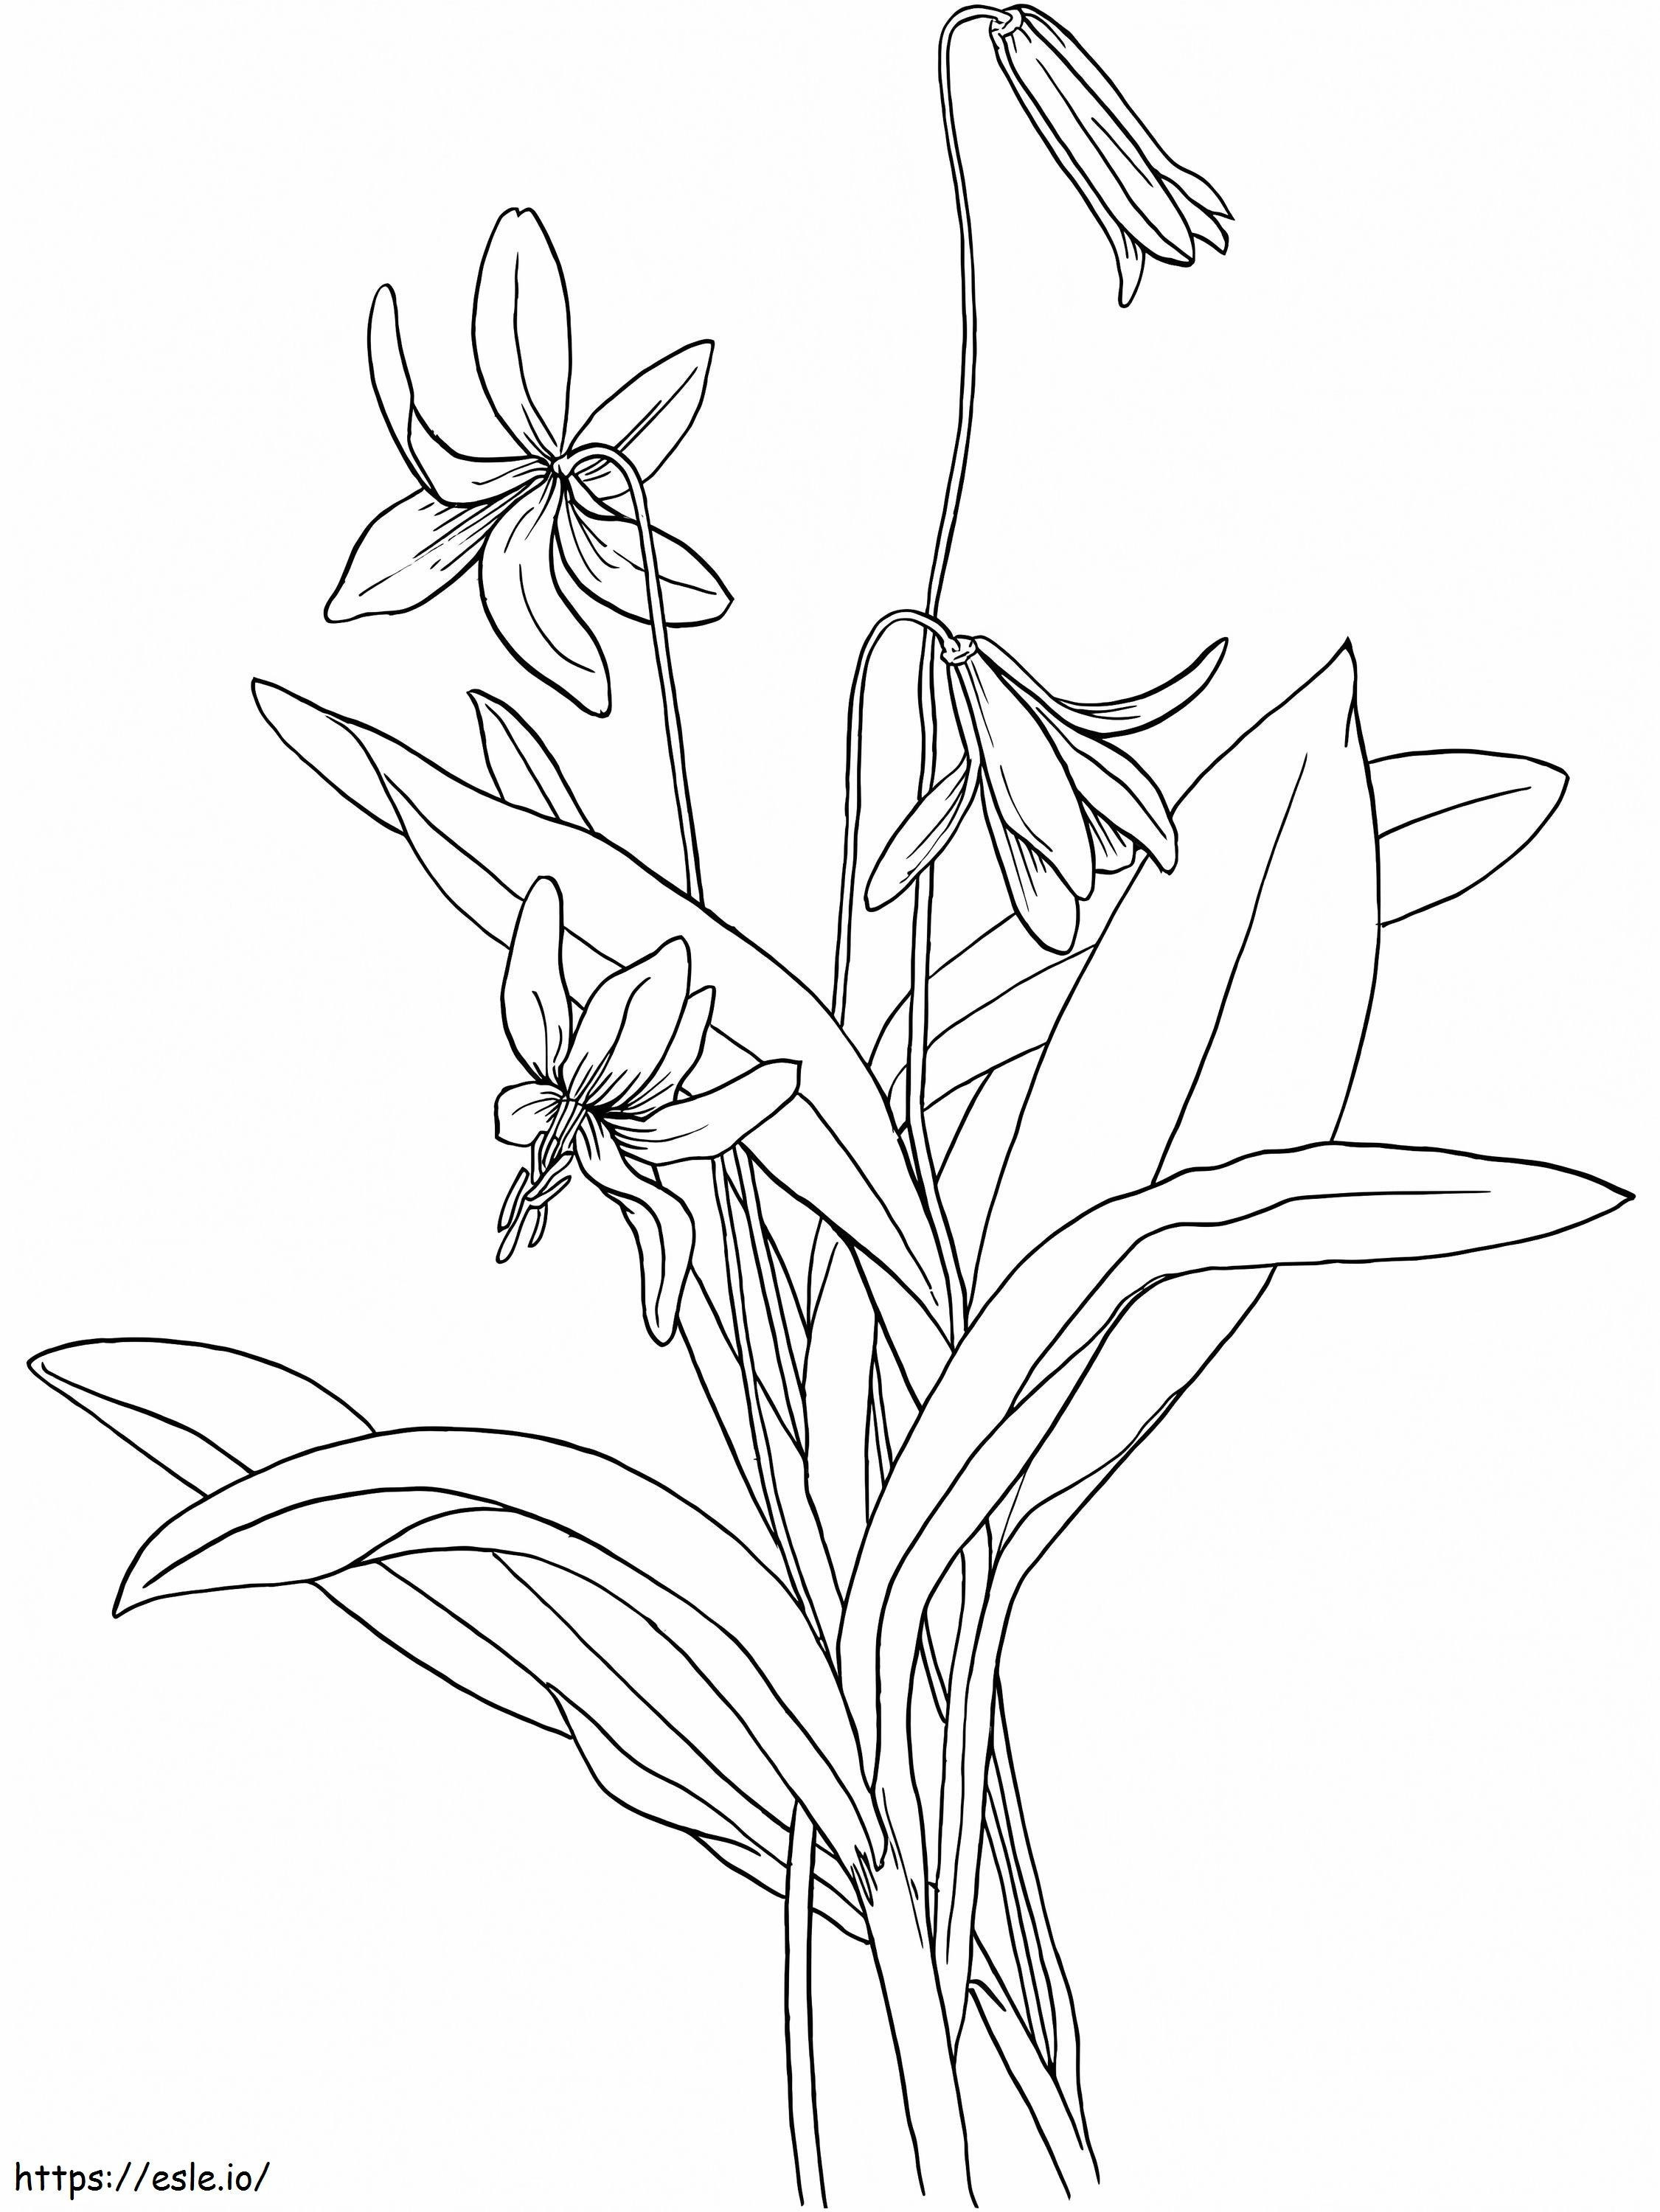 Blume der Veilchen 1 ausmalbilder